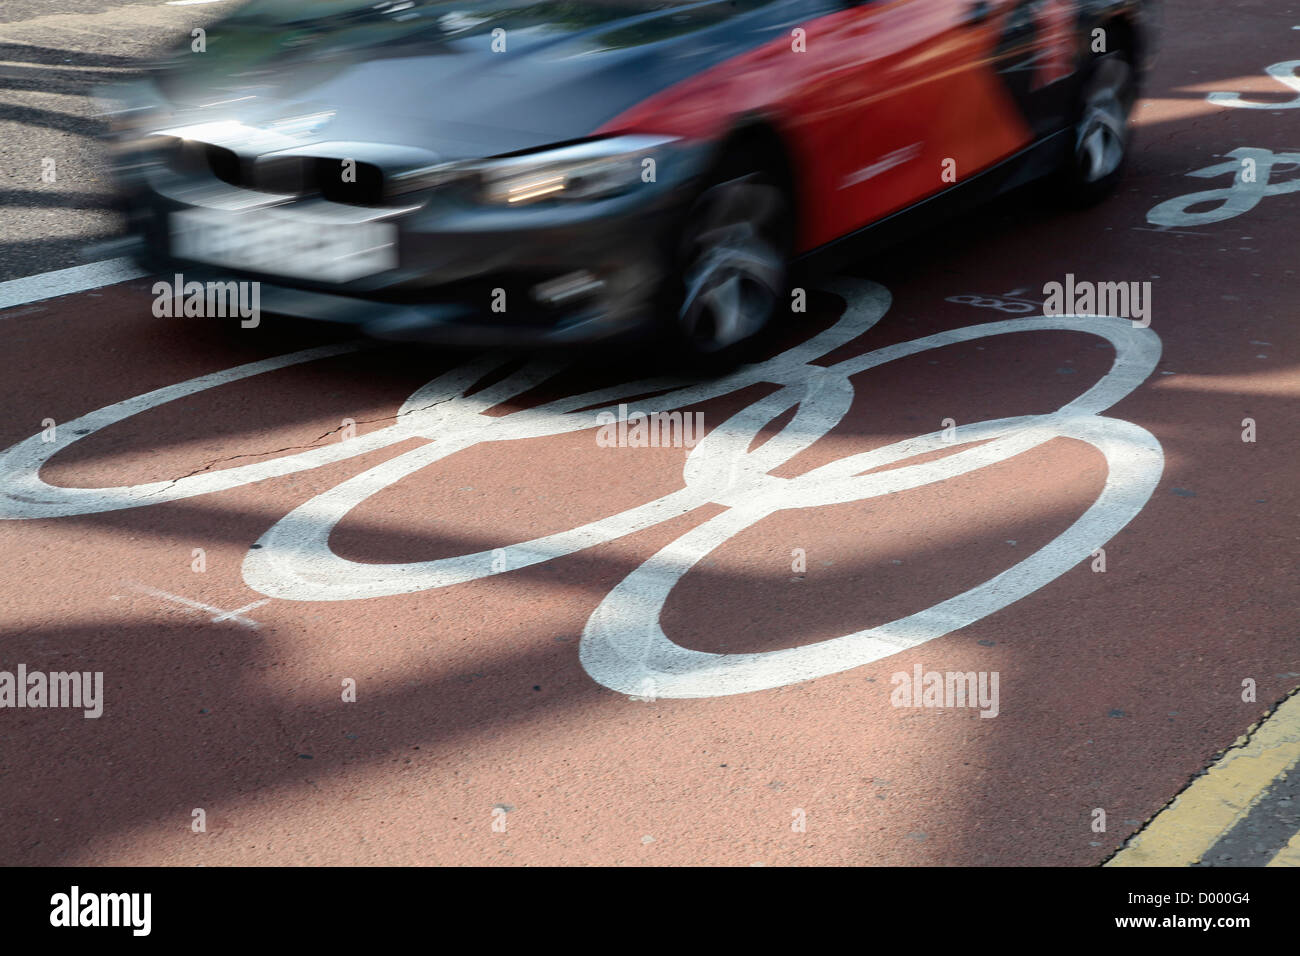 Stratford Giochi Olimpici Lane marcato sulla strada Auto Automobile Automóvil Automotive Isole Britanniche auto automobili Gran Bretagna Londres Foto Stock